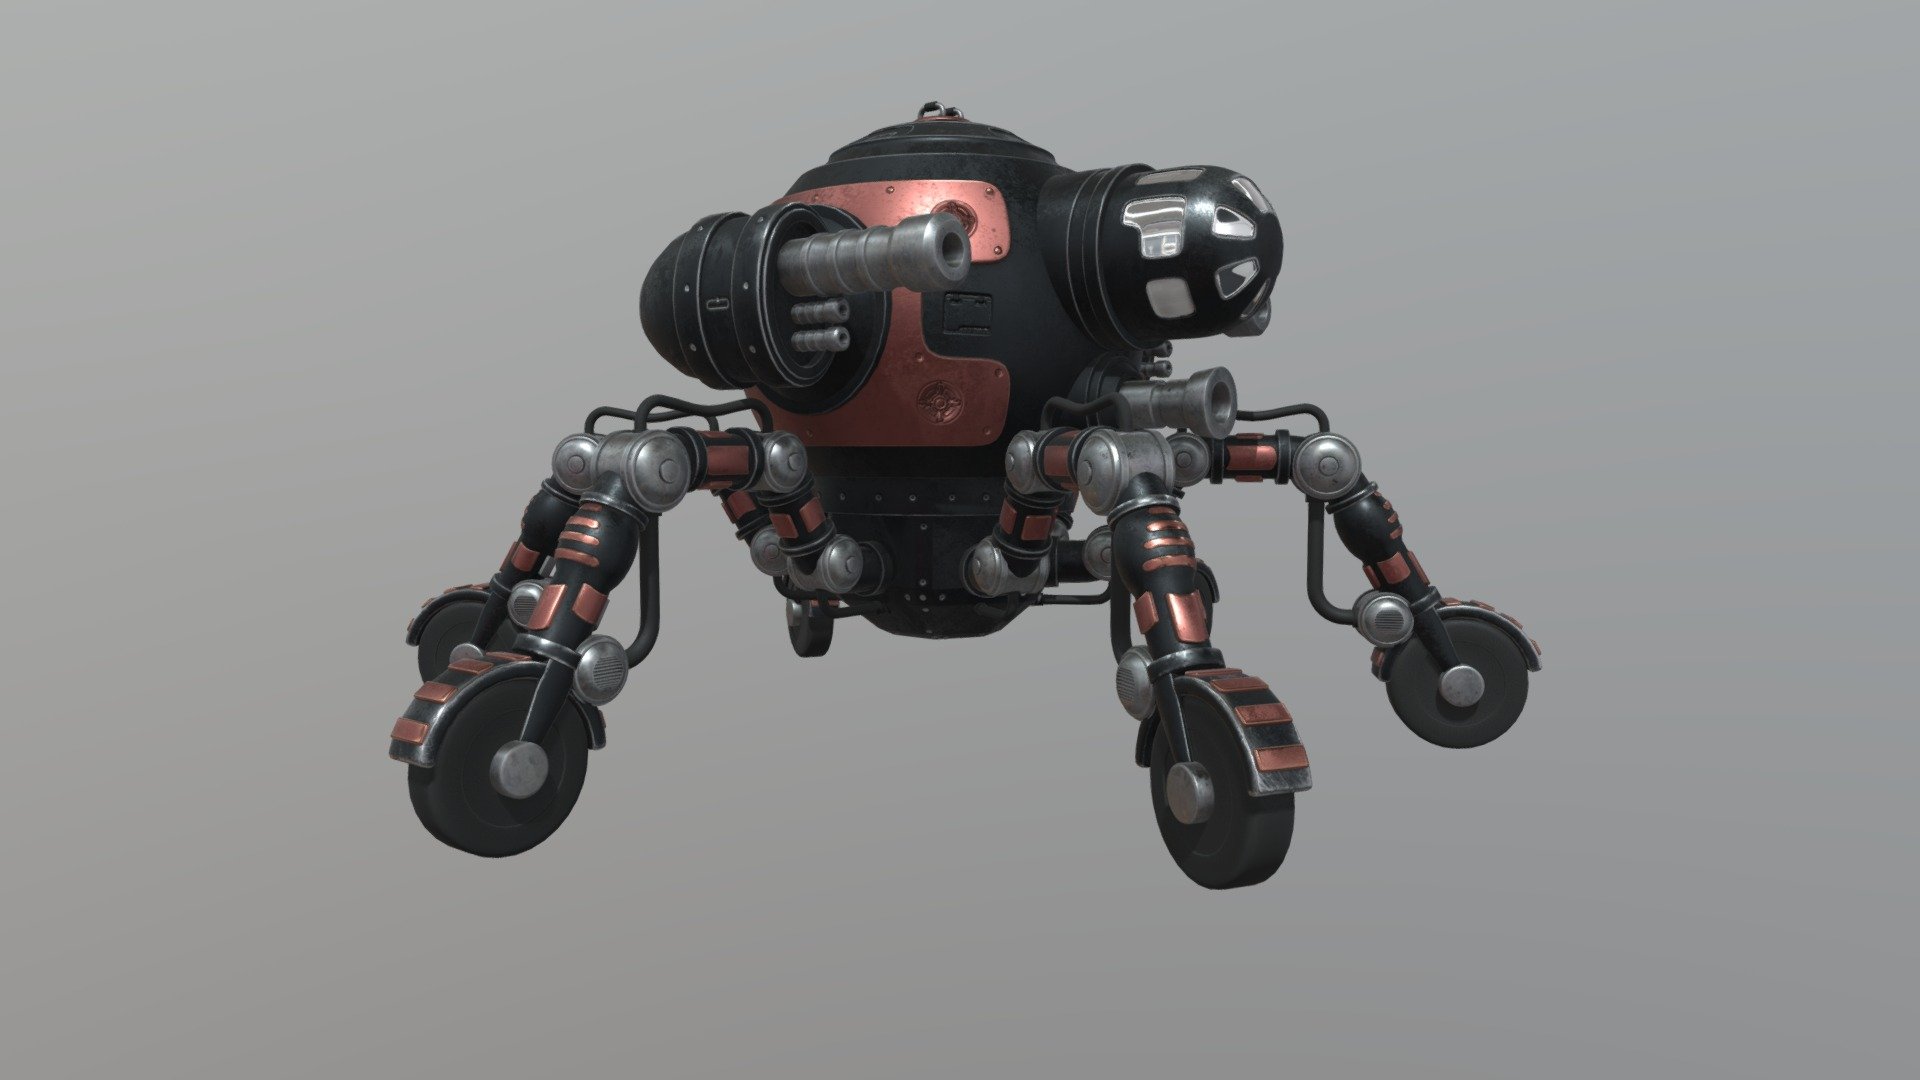 Beetle Bot